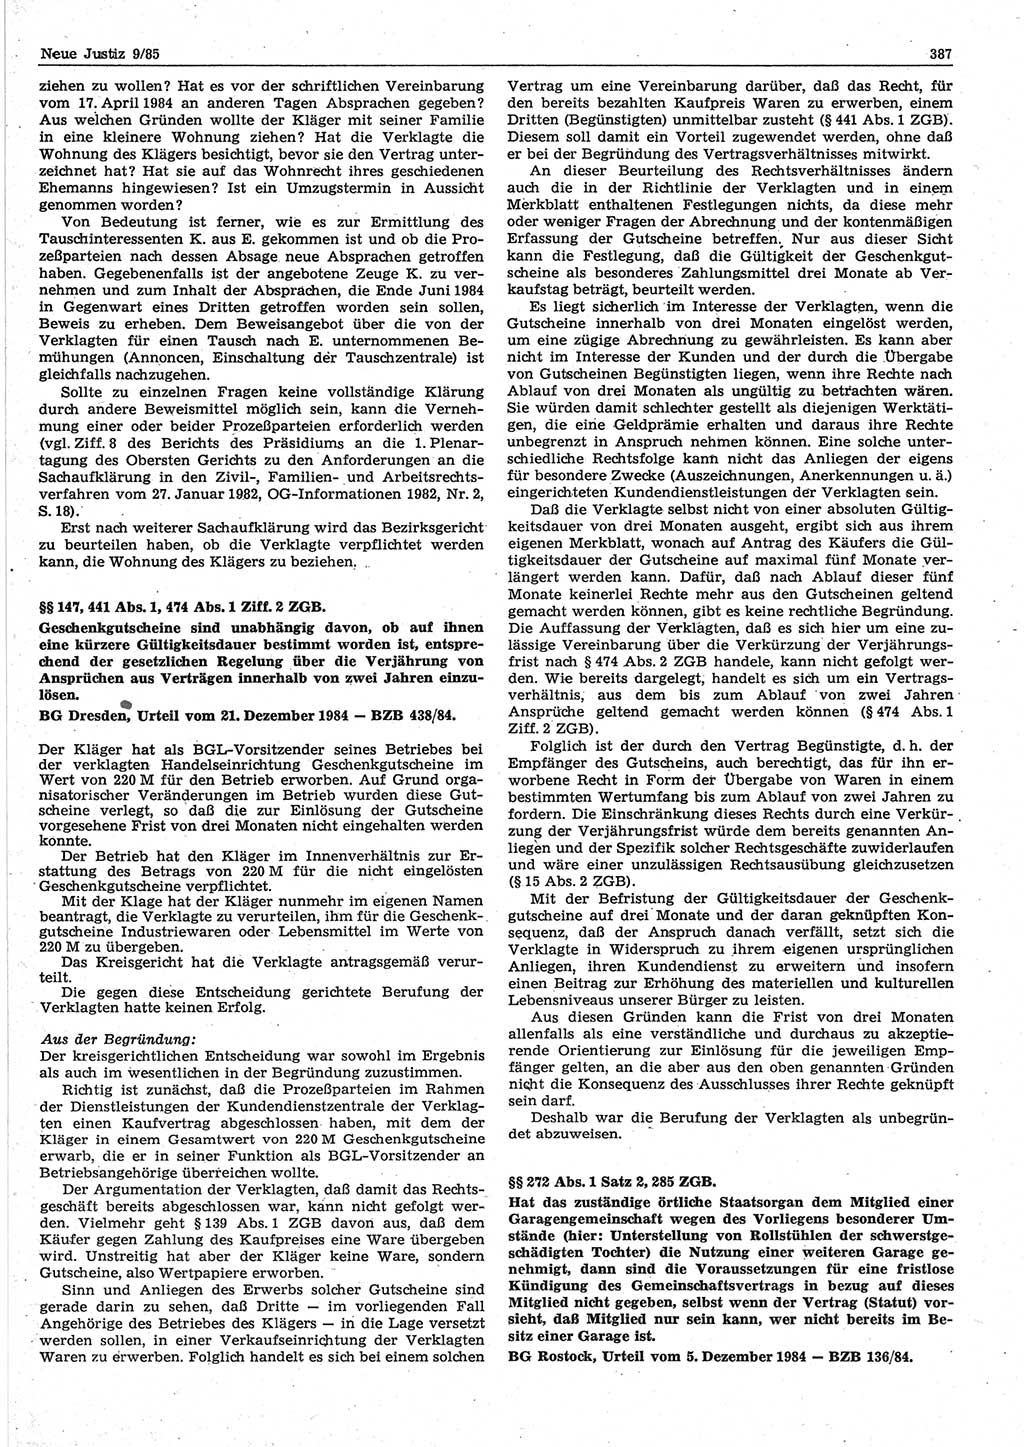 Neue Justiz (NJ), Zeitschrift für sozialistisches Recht und Gesetzlichkeit [Deutsche Demokratische Republik (DDR)], 39. Jahrgang 1985, Seite 387 (NJ DDR 1985, S. 387)